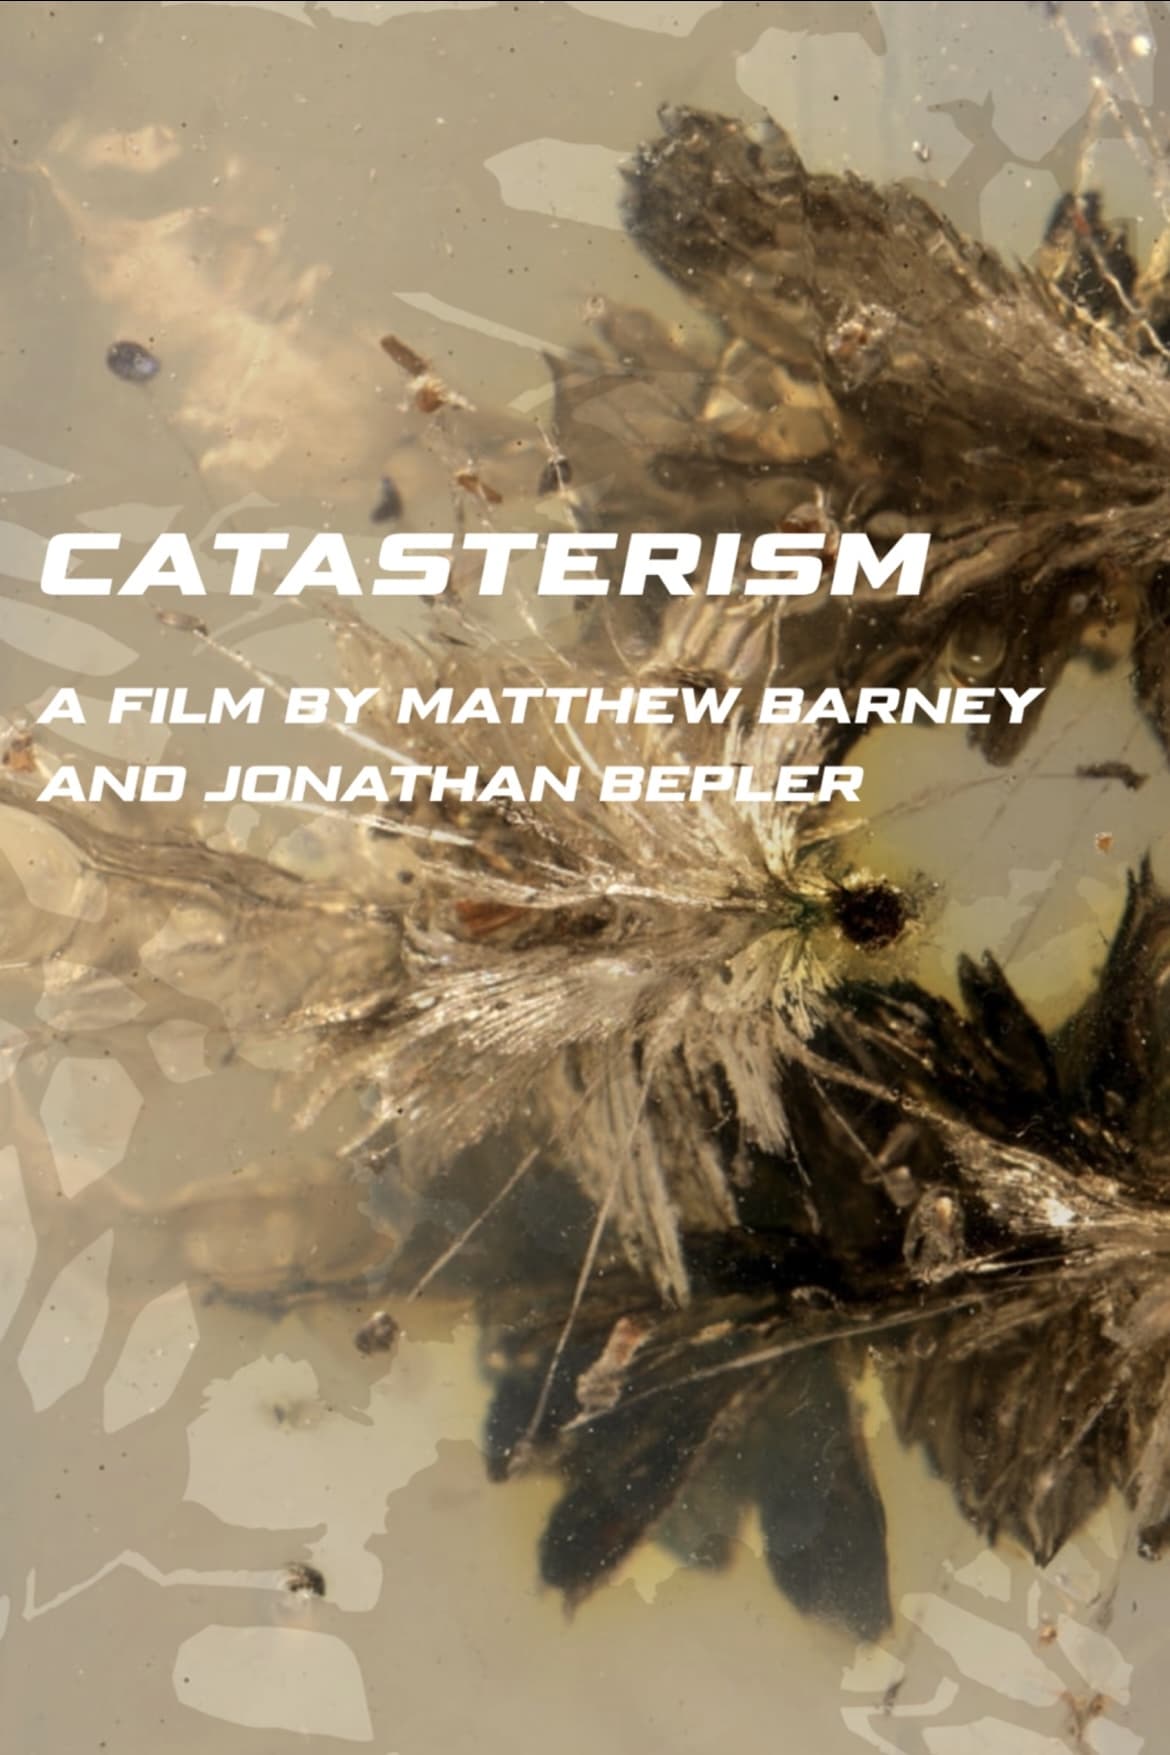 Catasterism